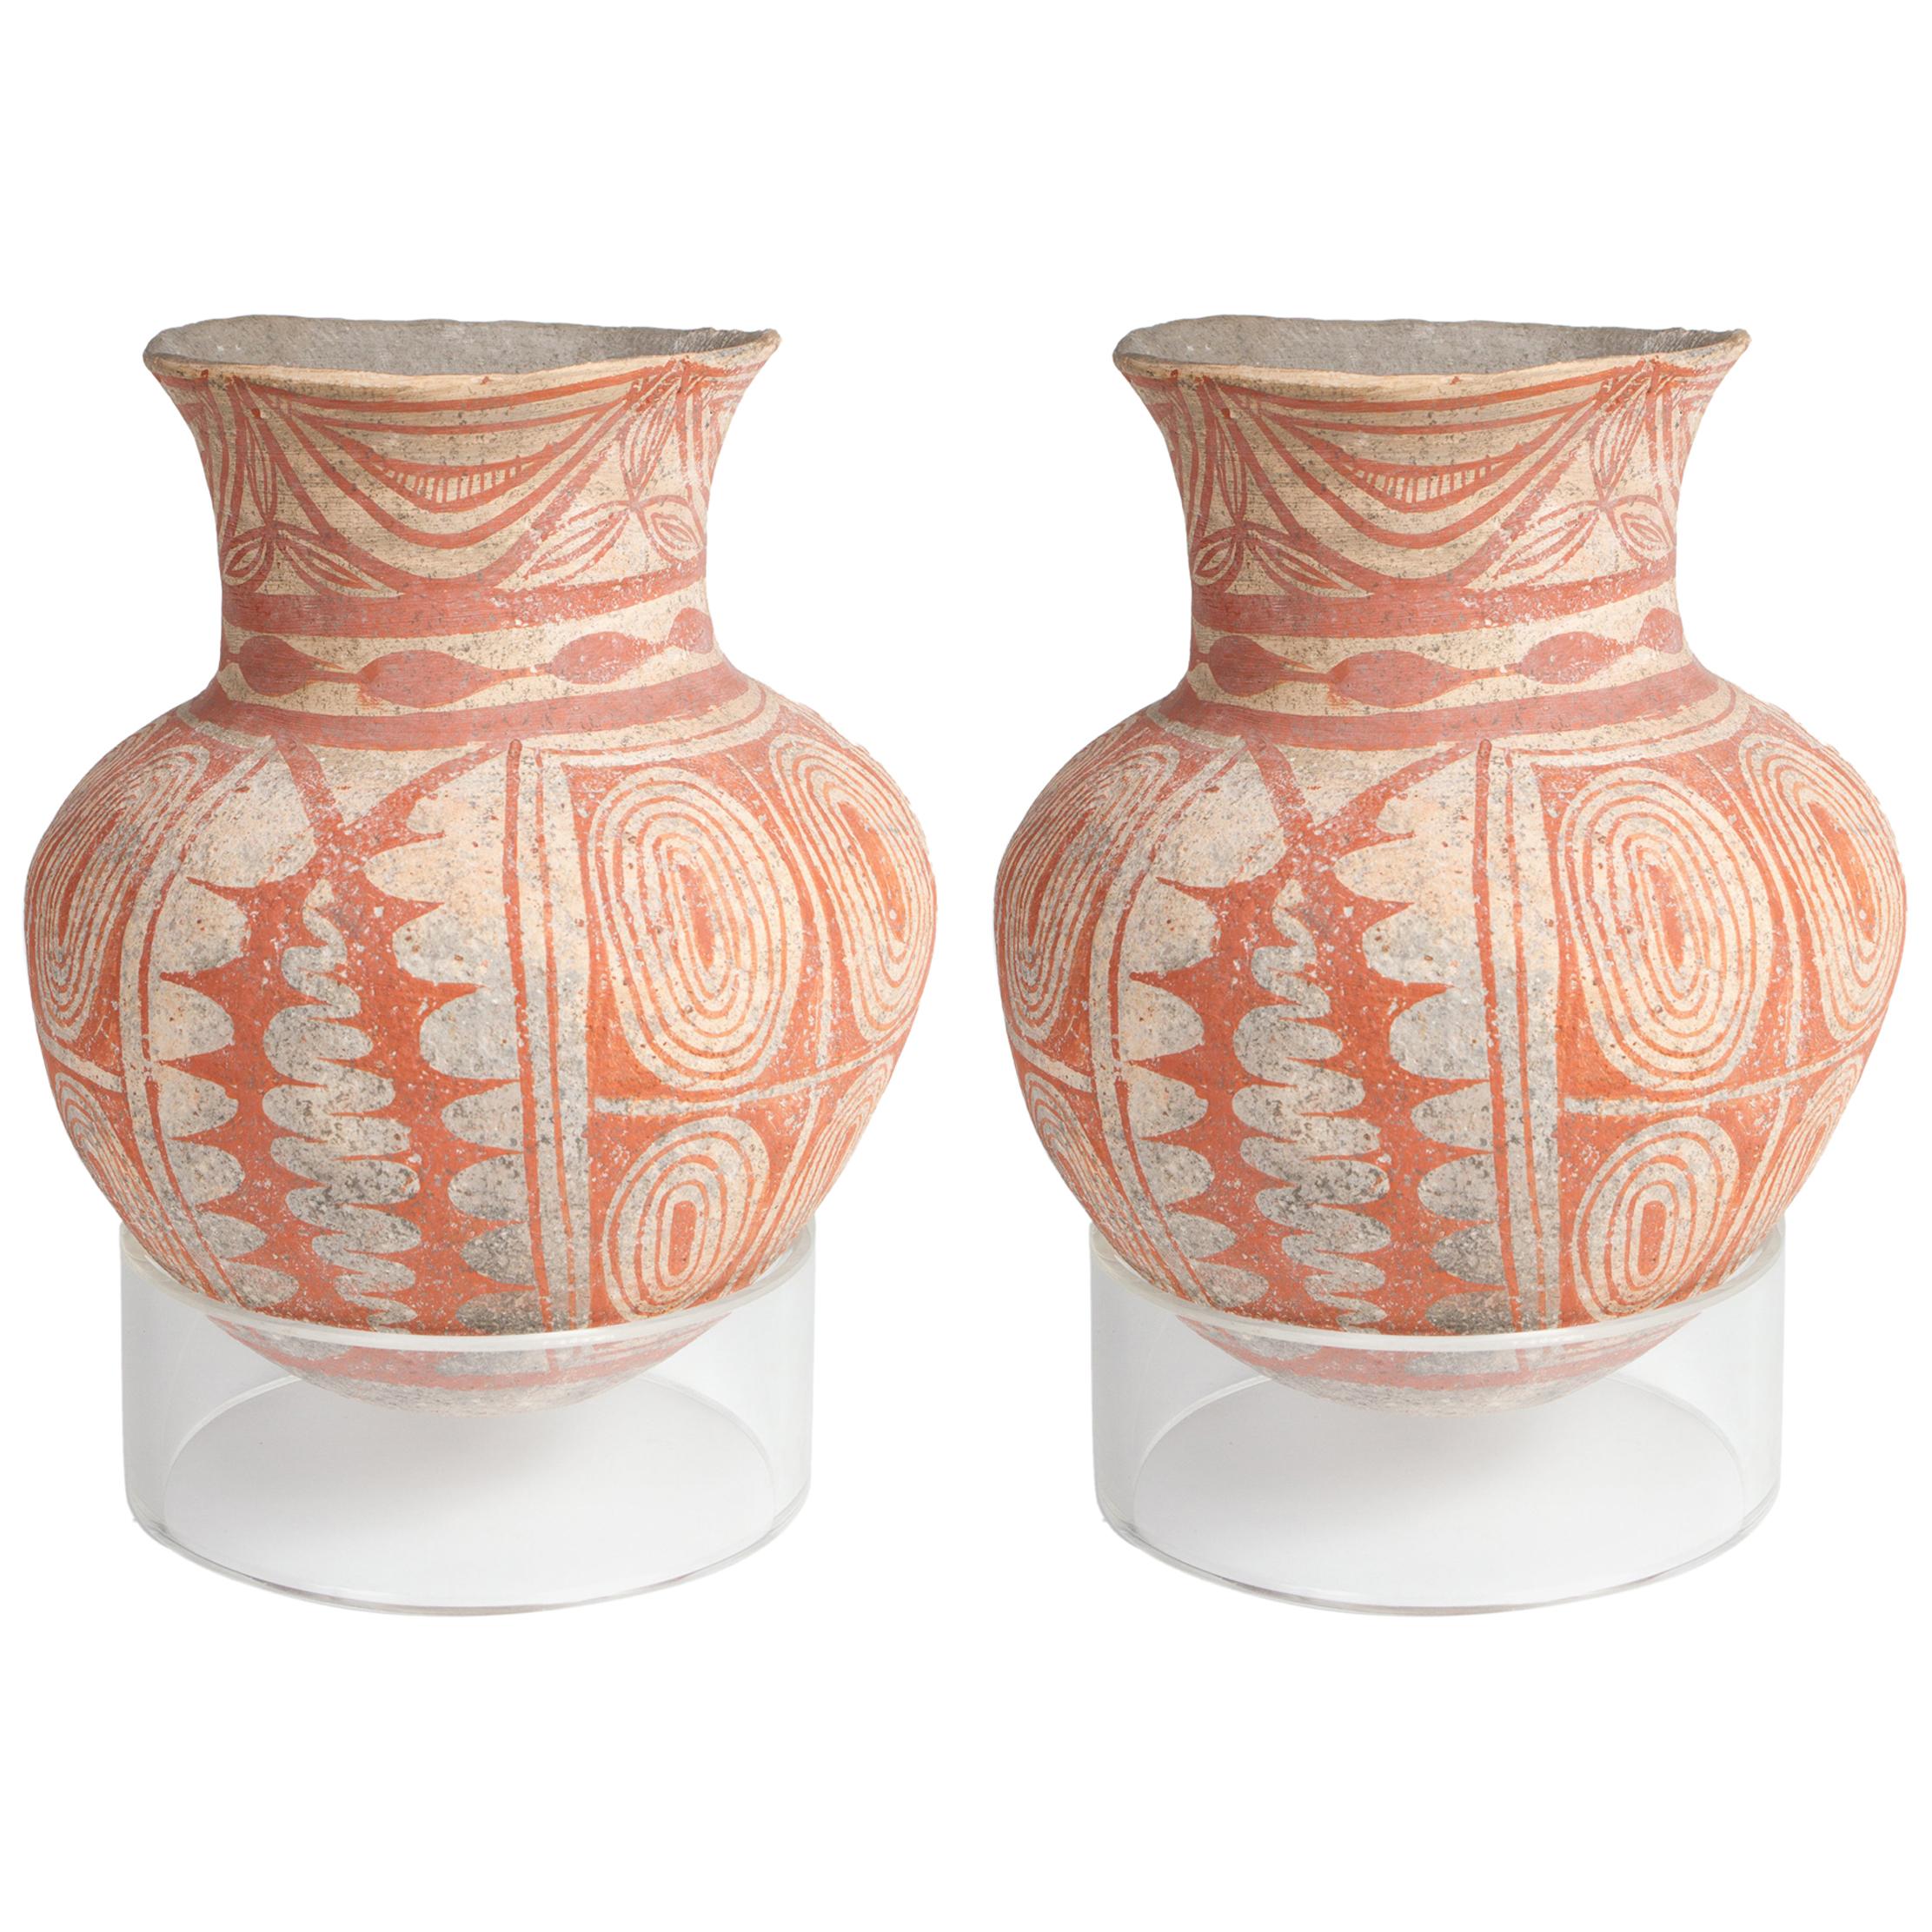 Paire de vases en poterie peinte de style thaïlandais Ban Chiang